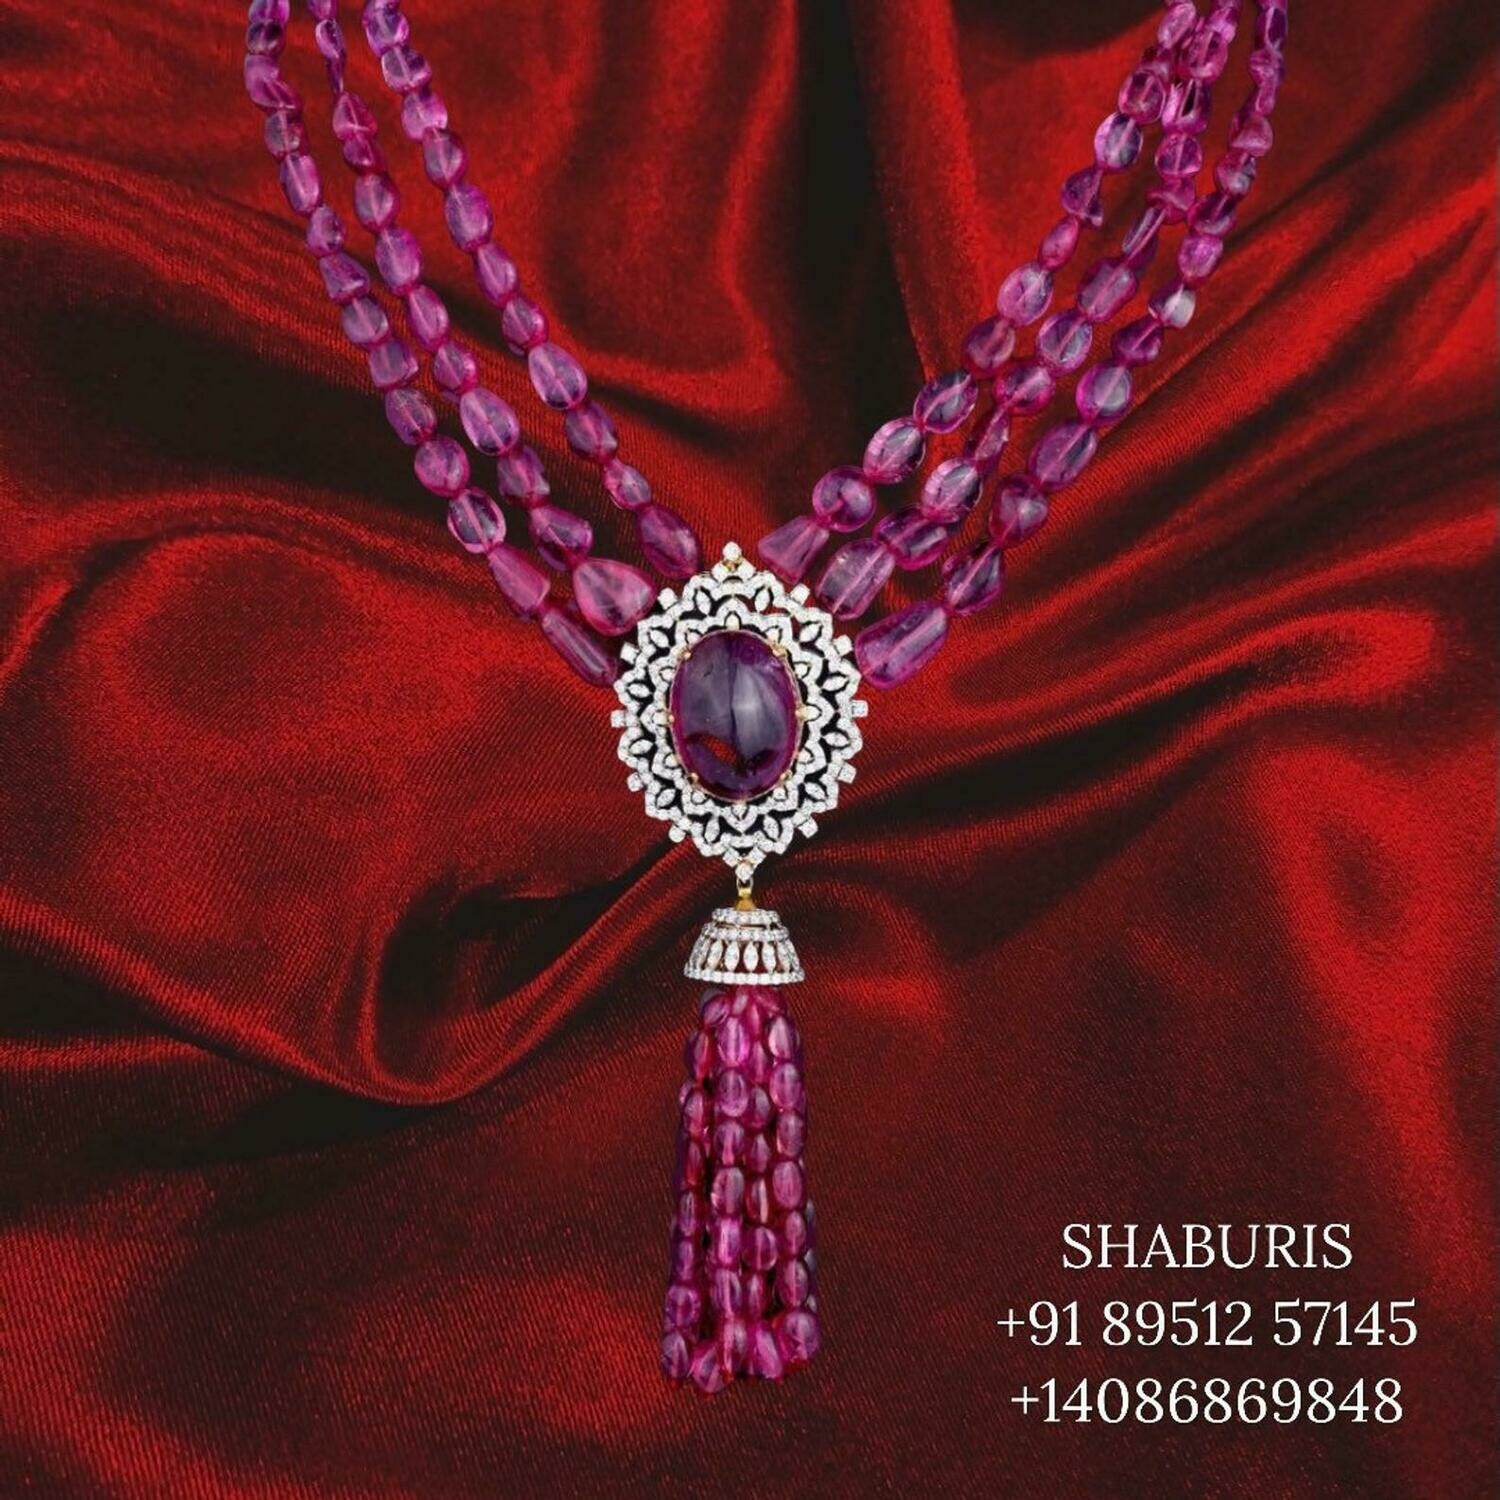 Tassel jewelry ruby bead jewelry diamond jewelry indian gold jewelry designs diamond necklace sets pure silver jewelry jewelry sets SHABURIS